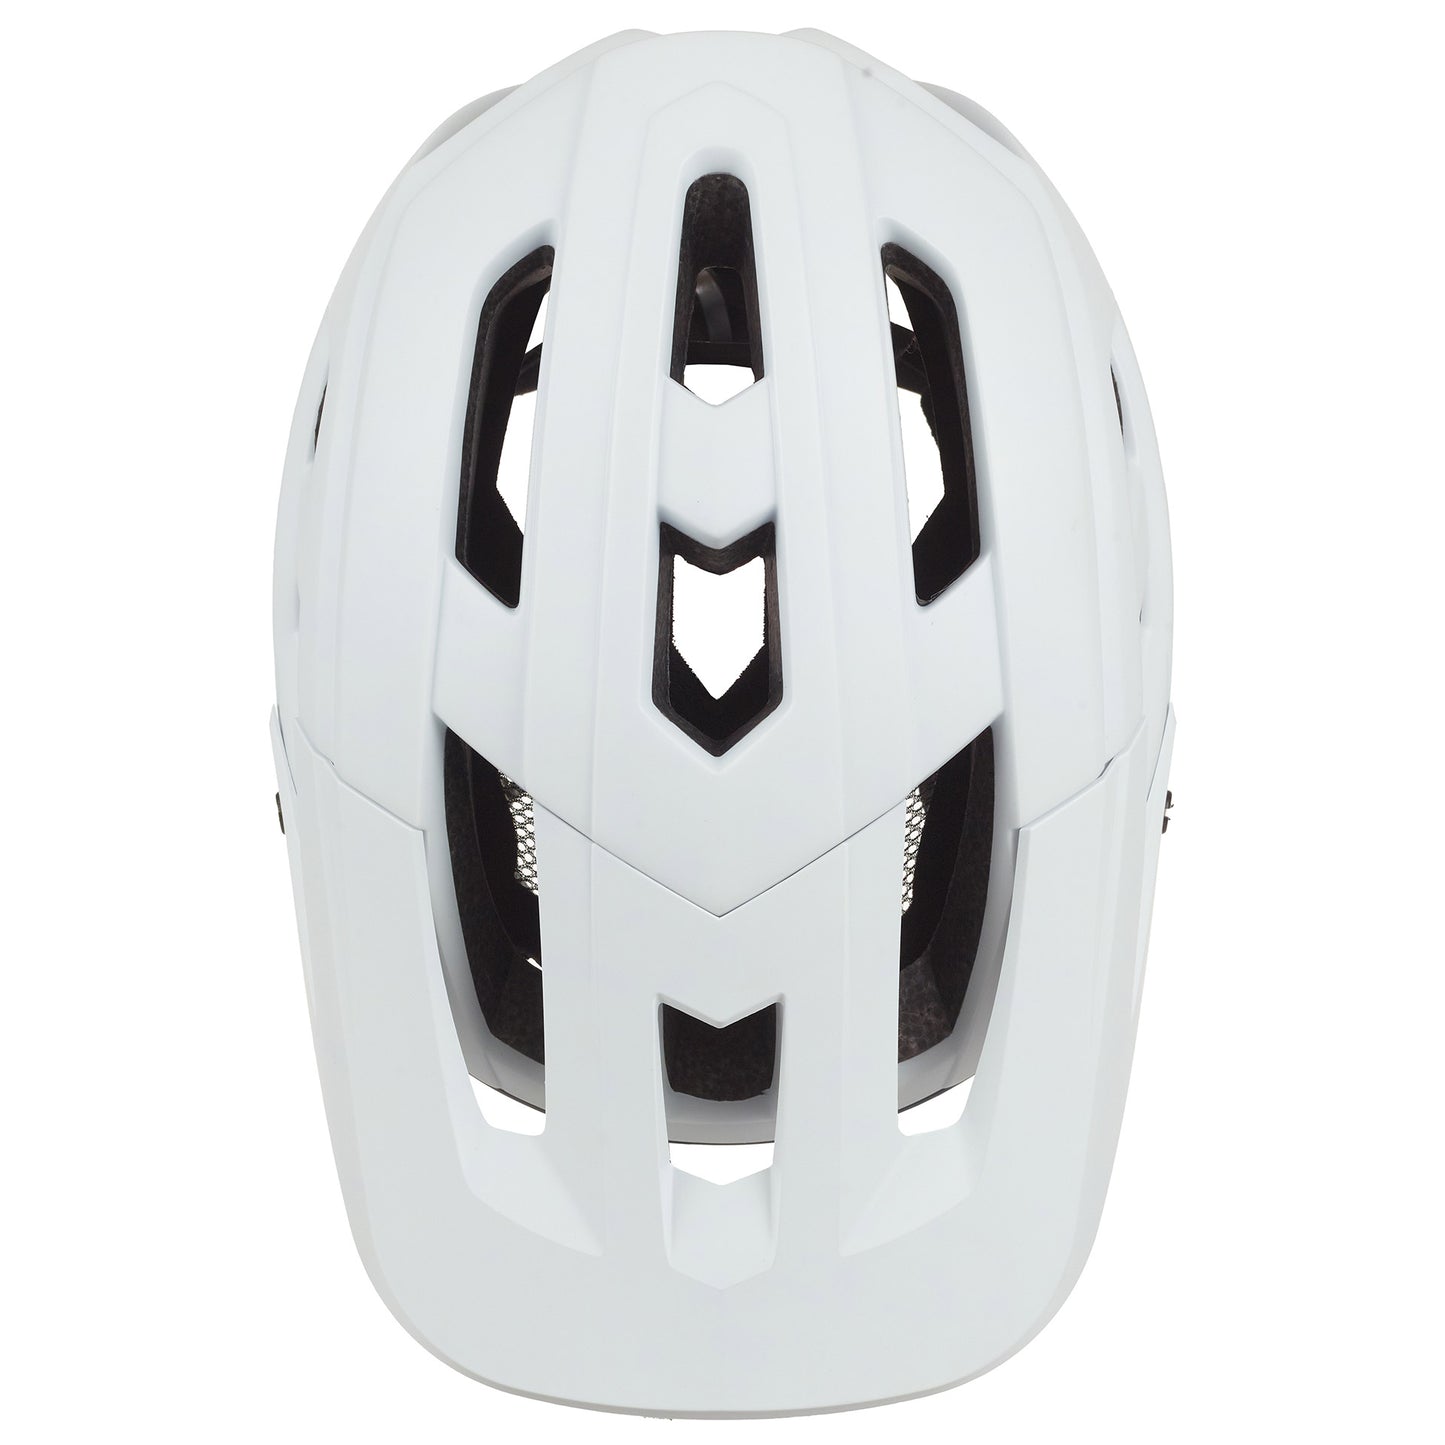 Polispgoudt Mountain Pro Bicycle Helmet L 58-61 cm Grigio bianco